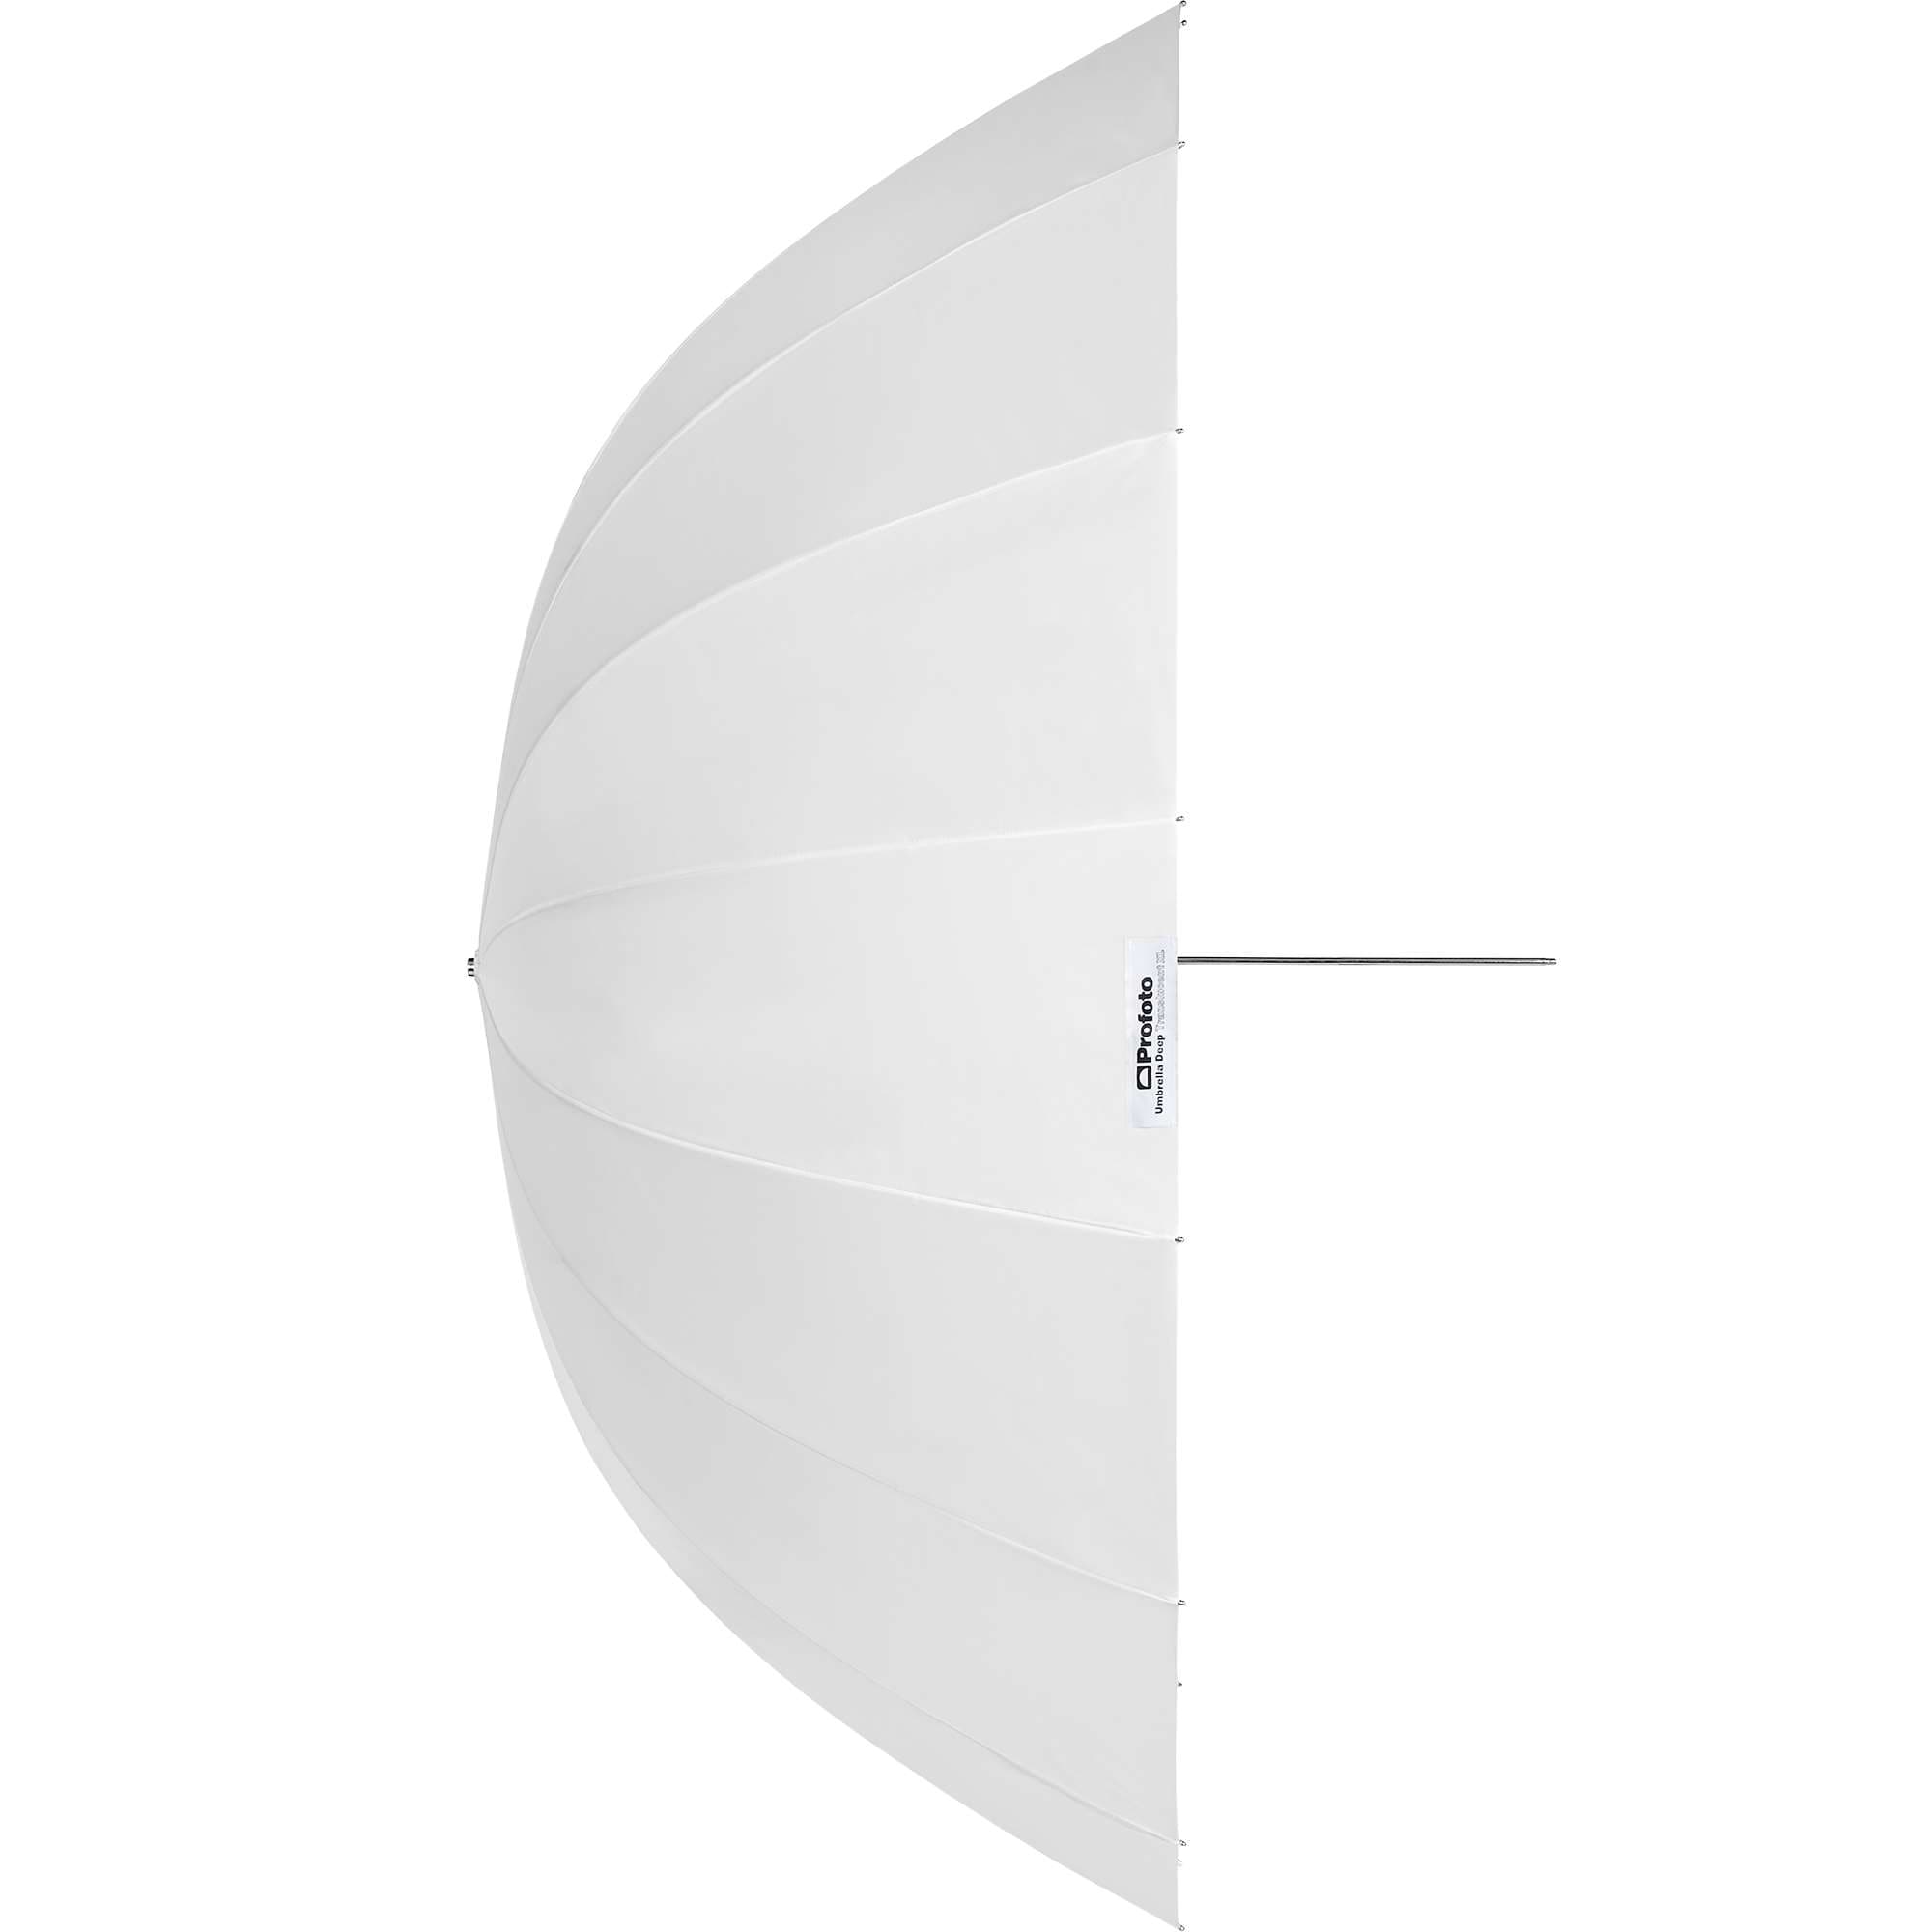 Profoto Umbrella Deep Translucent XL